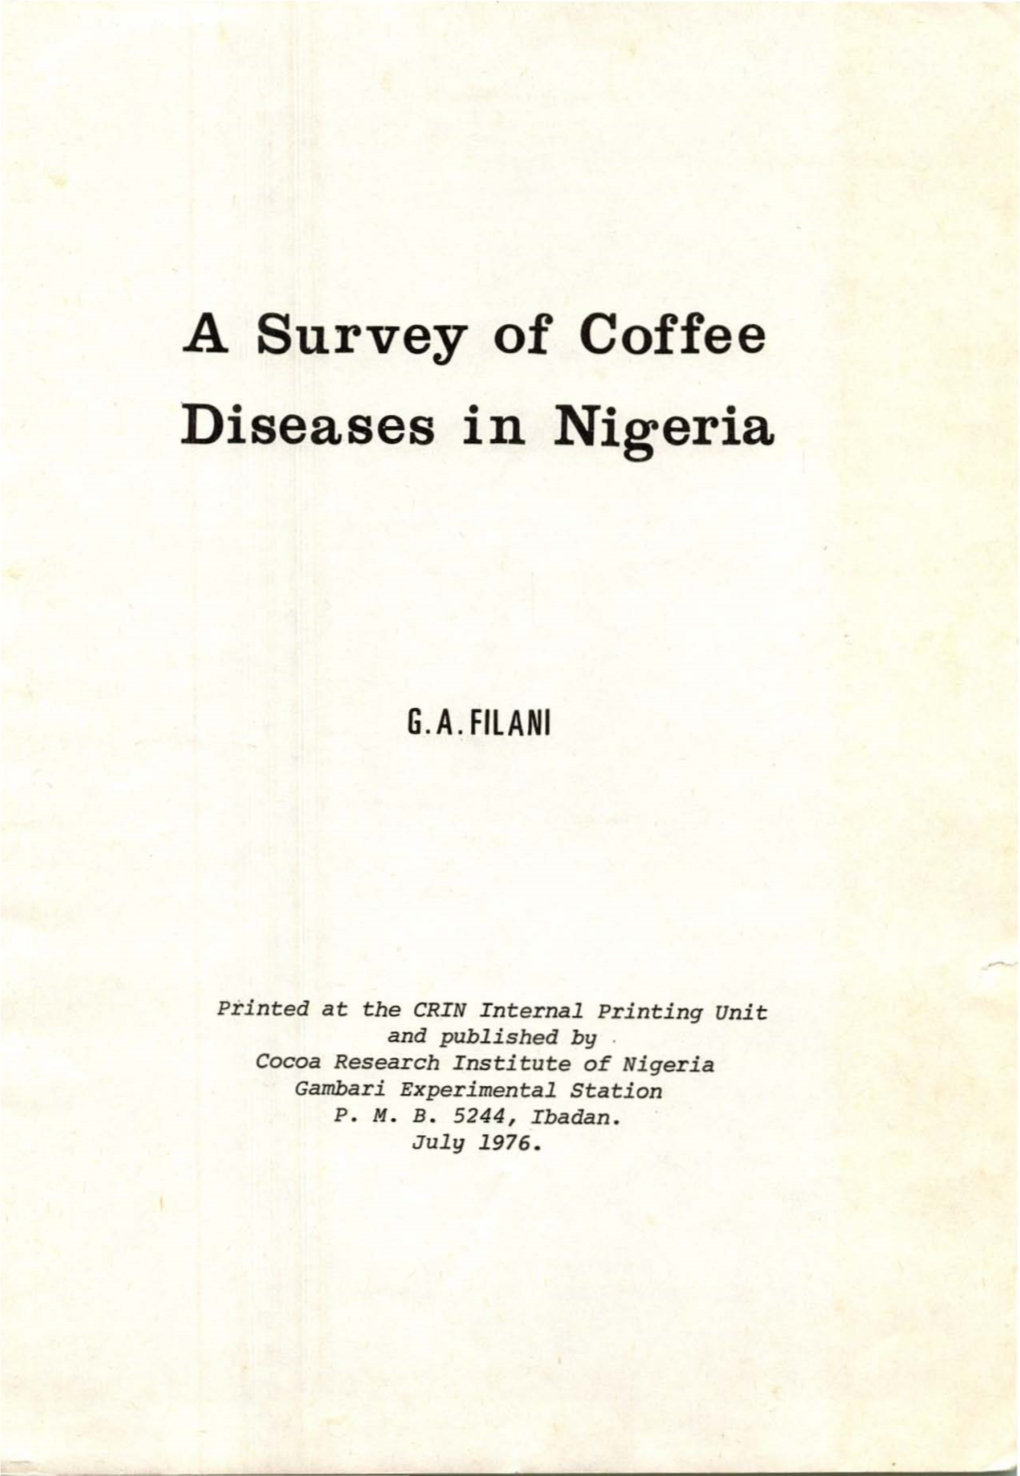 Diseases in Nigeria